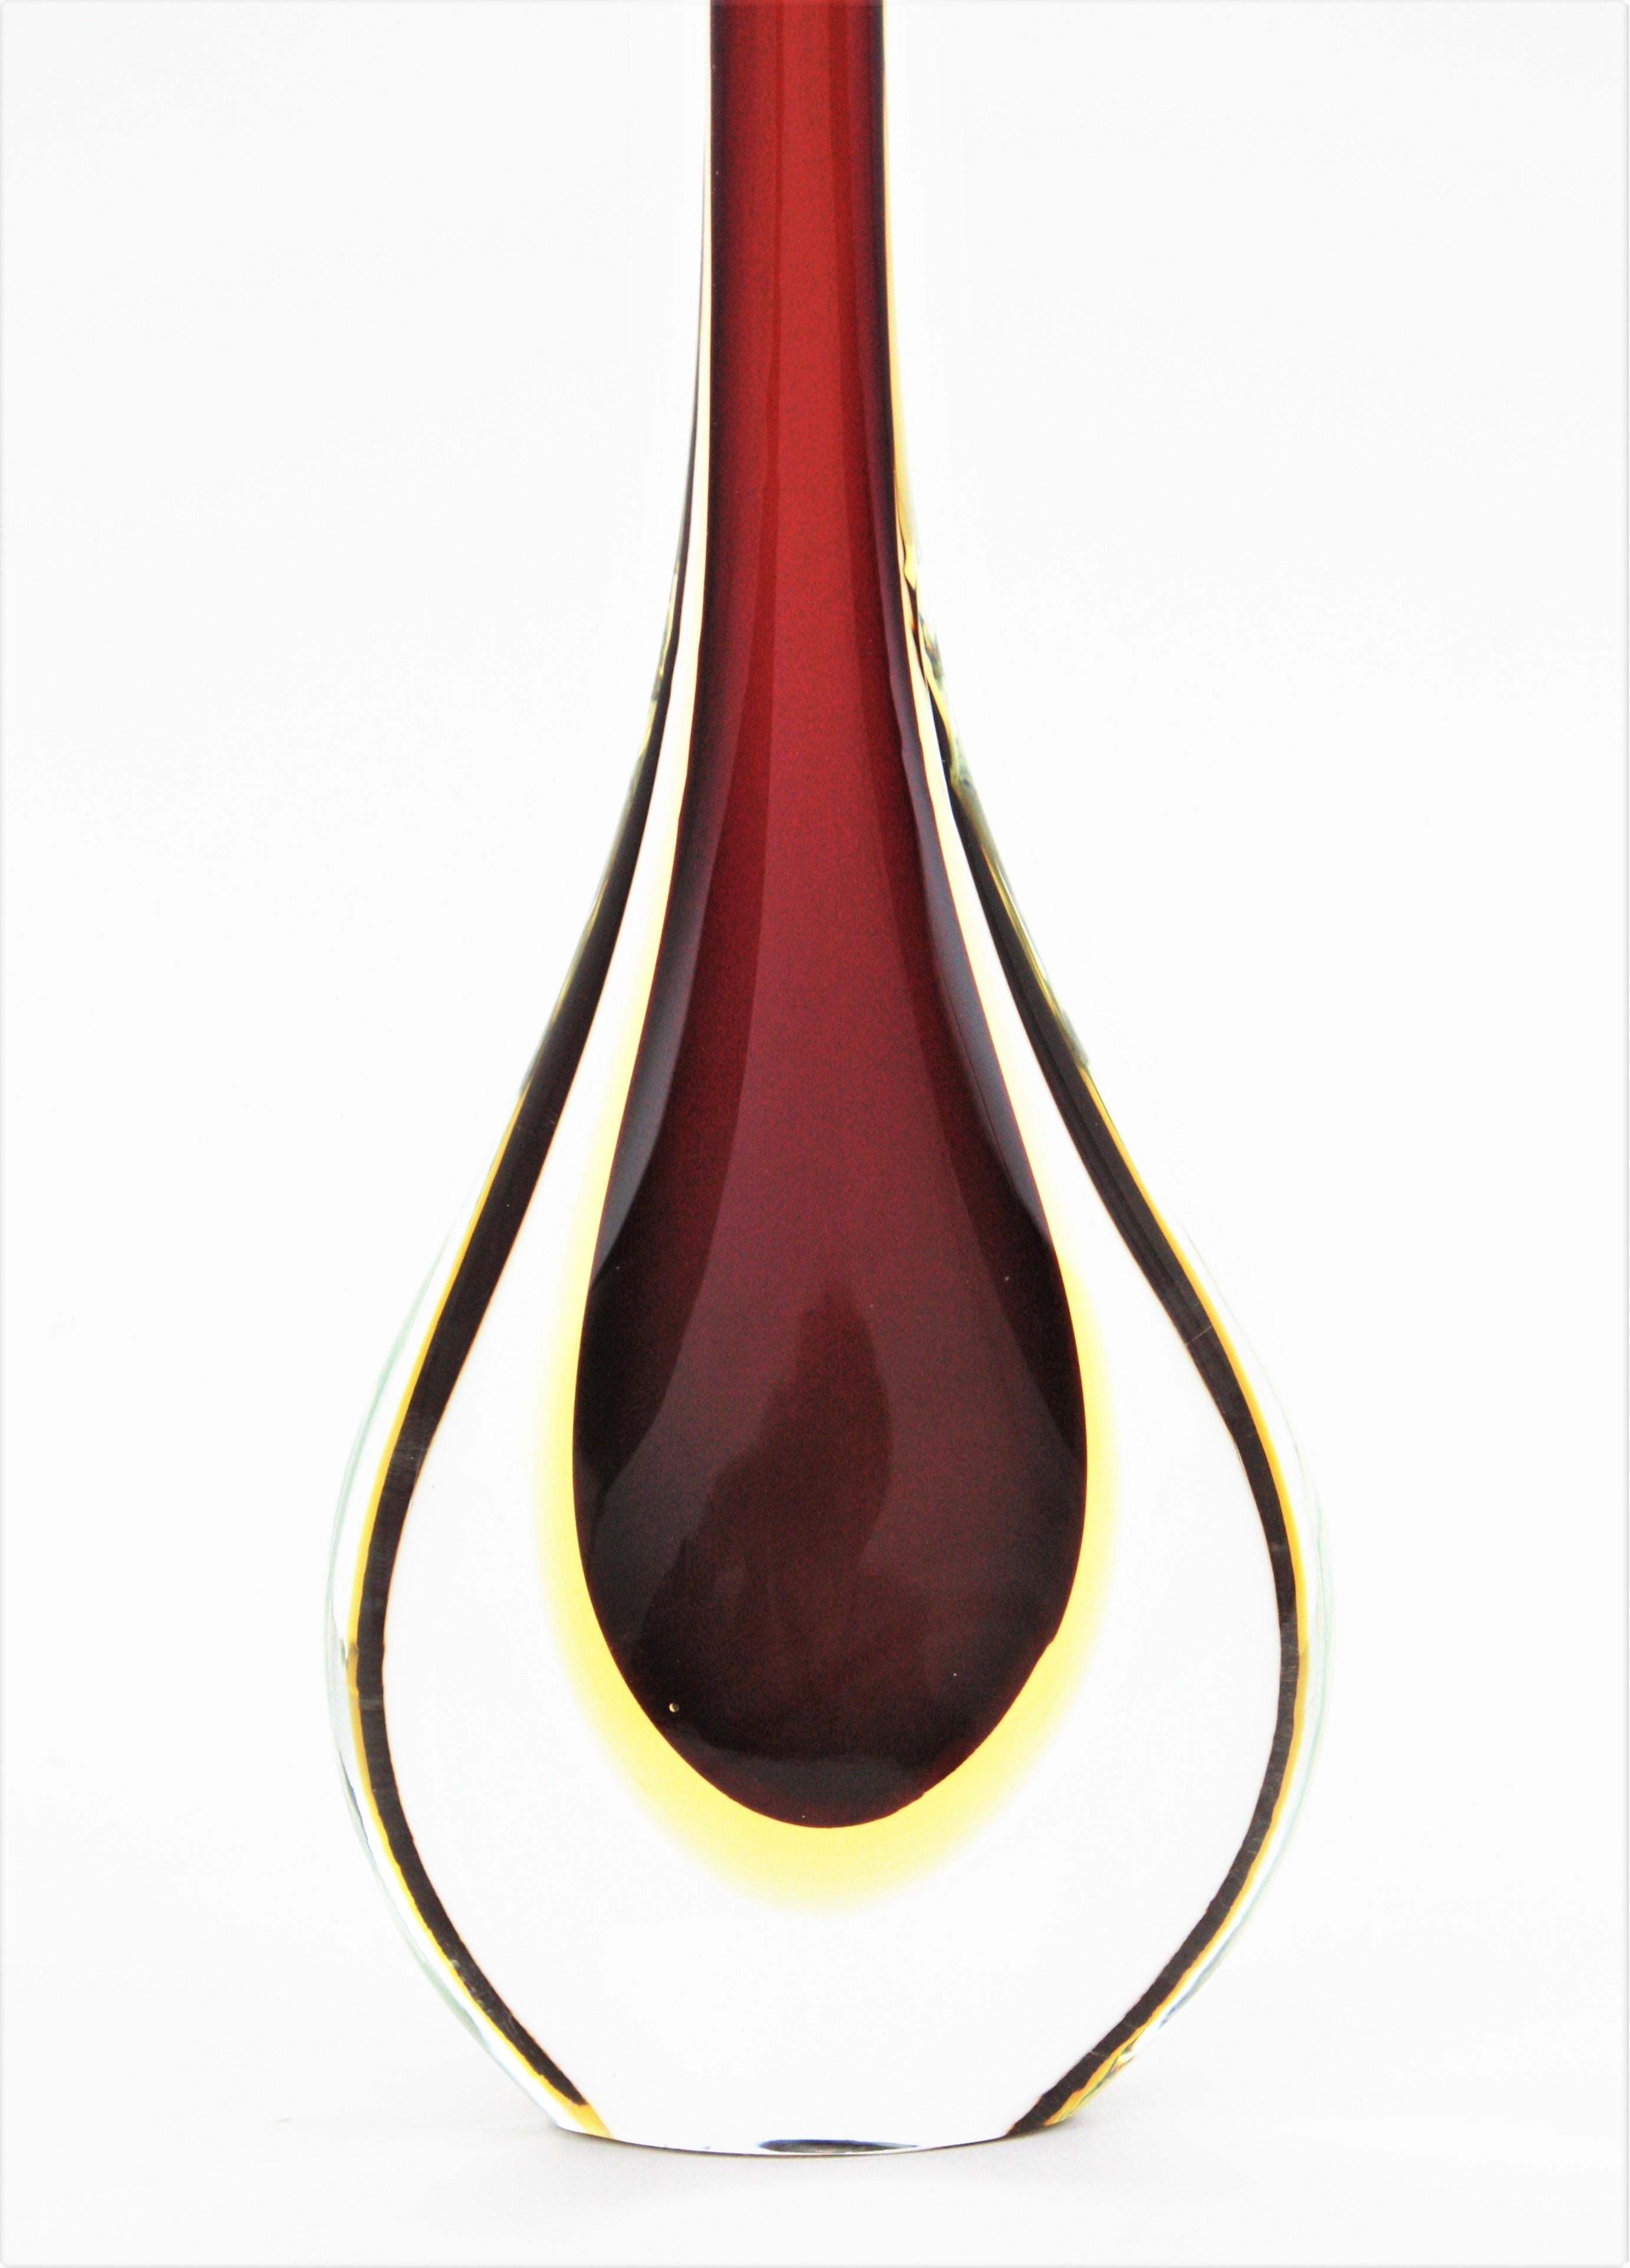 Magnifique grand vase en verre de Murano rouge et jaune soufflé à la main. Conçu par Flavio Poli et fabriqué par Seguso Vetri d'Arte, Italie, années 1950.
Forme étonnante en goutte d'eau avec un col haut et des couleurs qui attirent l'attention.